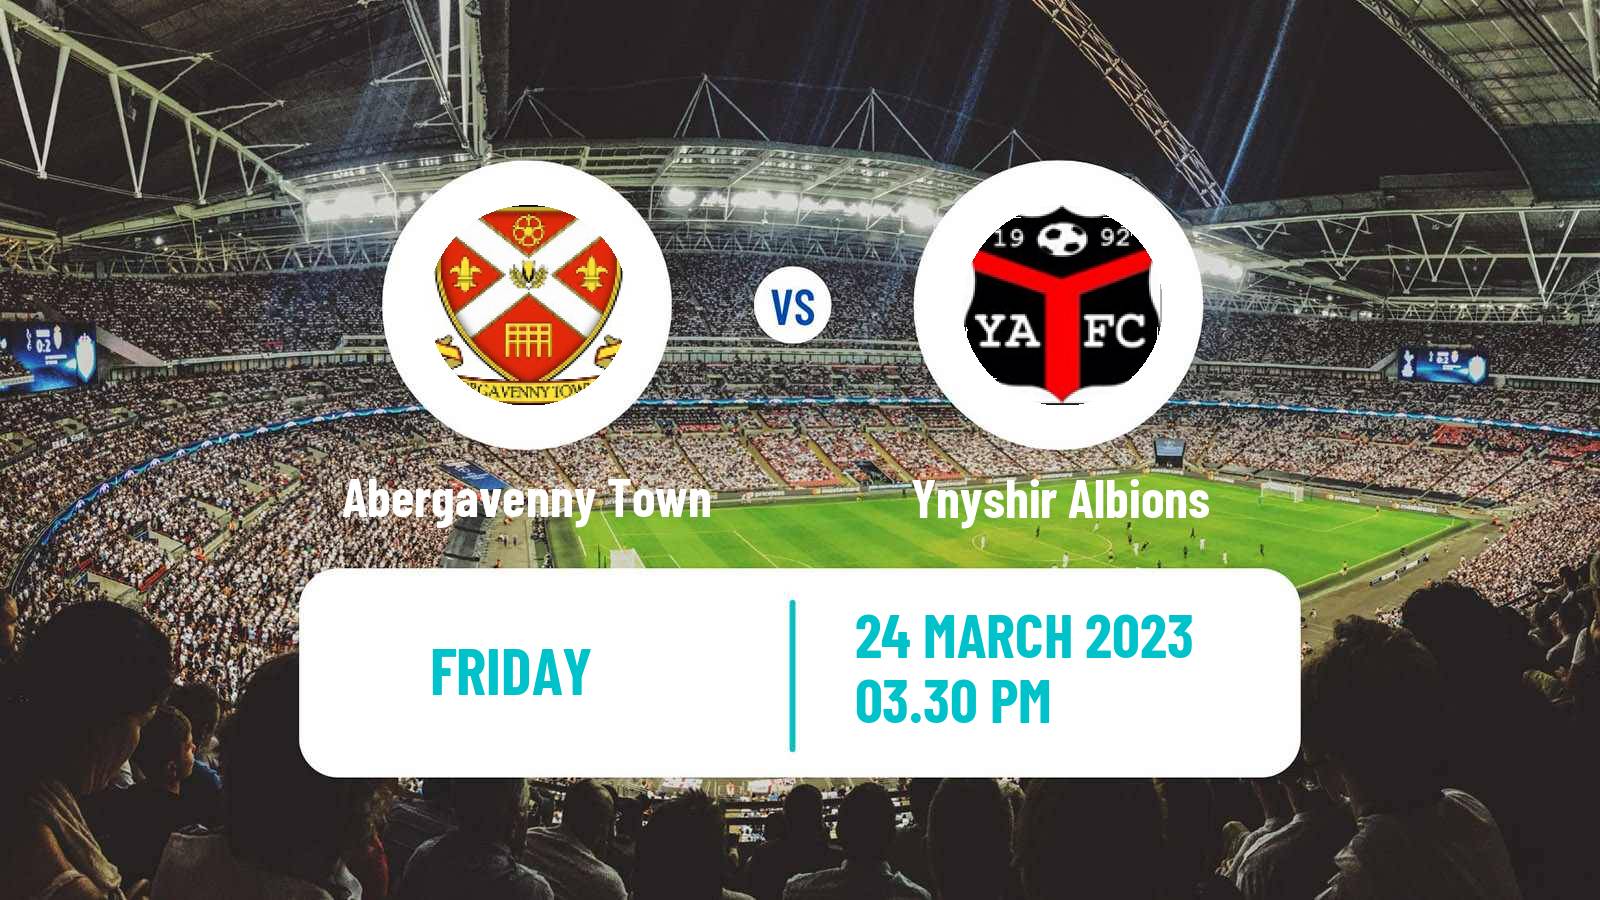 Soccer Welsh Cymru South Abergavenny Town - Ynyshir Albions